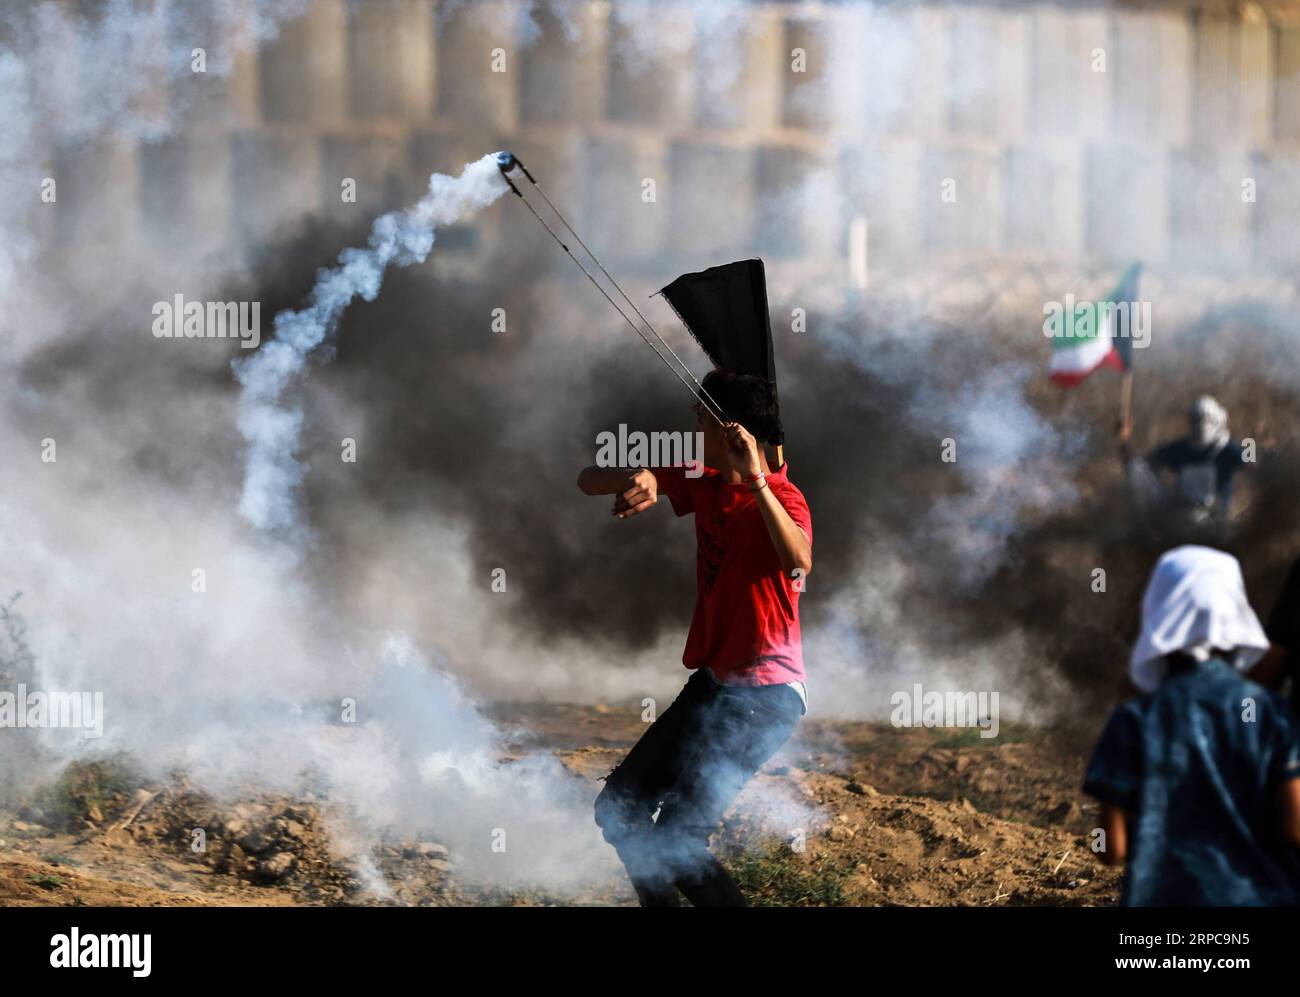 (190628) -- GAZA, 28 giugno 2019 (Xinhua) -- Un manifestante palestinese usa una fionda per respingere una tanica di gas lacrimogeni sparata dalle truppe israeliane durante gli scontri sul confine tra Gaza e Israele, a est del campo profughi di al-Bureij nella Striscia di Gaza centrale, 28 giugno 2019. Almeno 50 palestinesi sono rimasti feriti venerdì negli scontri tra decine di manifestanti e soldati israeliani di stanza al confine tra la Striscia di Gaza orientale e Israele. (Xinhua/Yasser Qudih) MIDEAST-GAZA-CLASHES PUBLICATIONxNOTxINxCHN Foto Stock